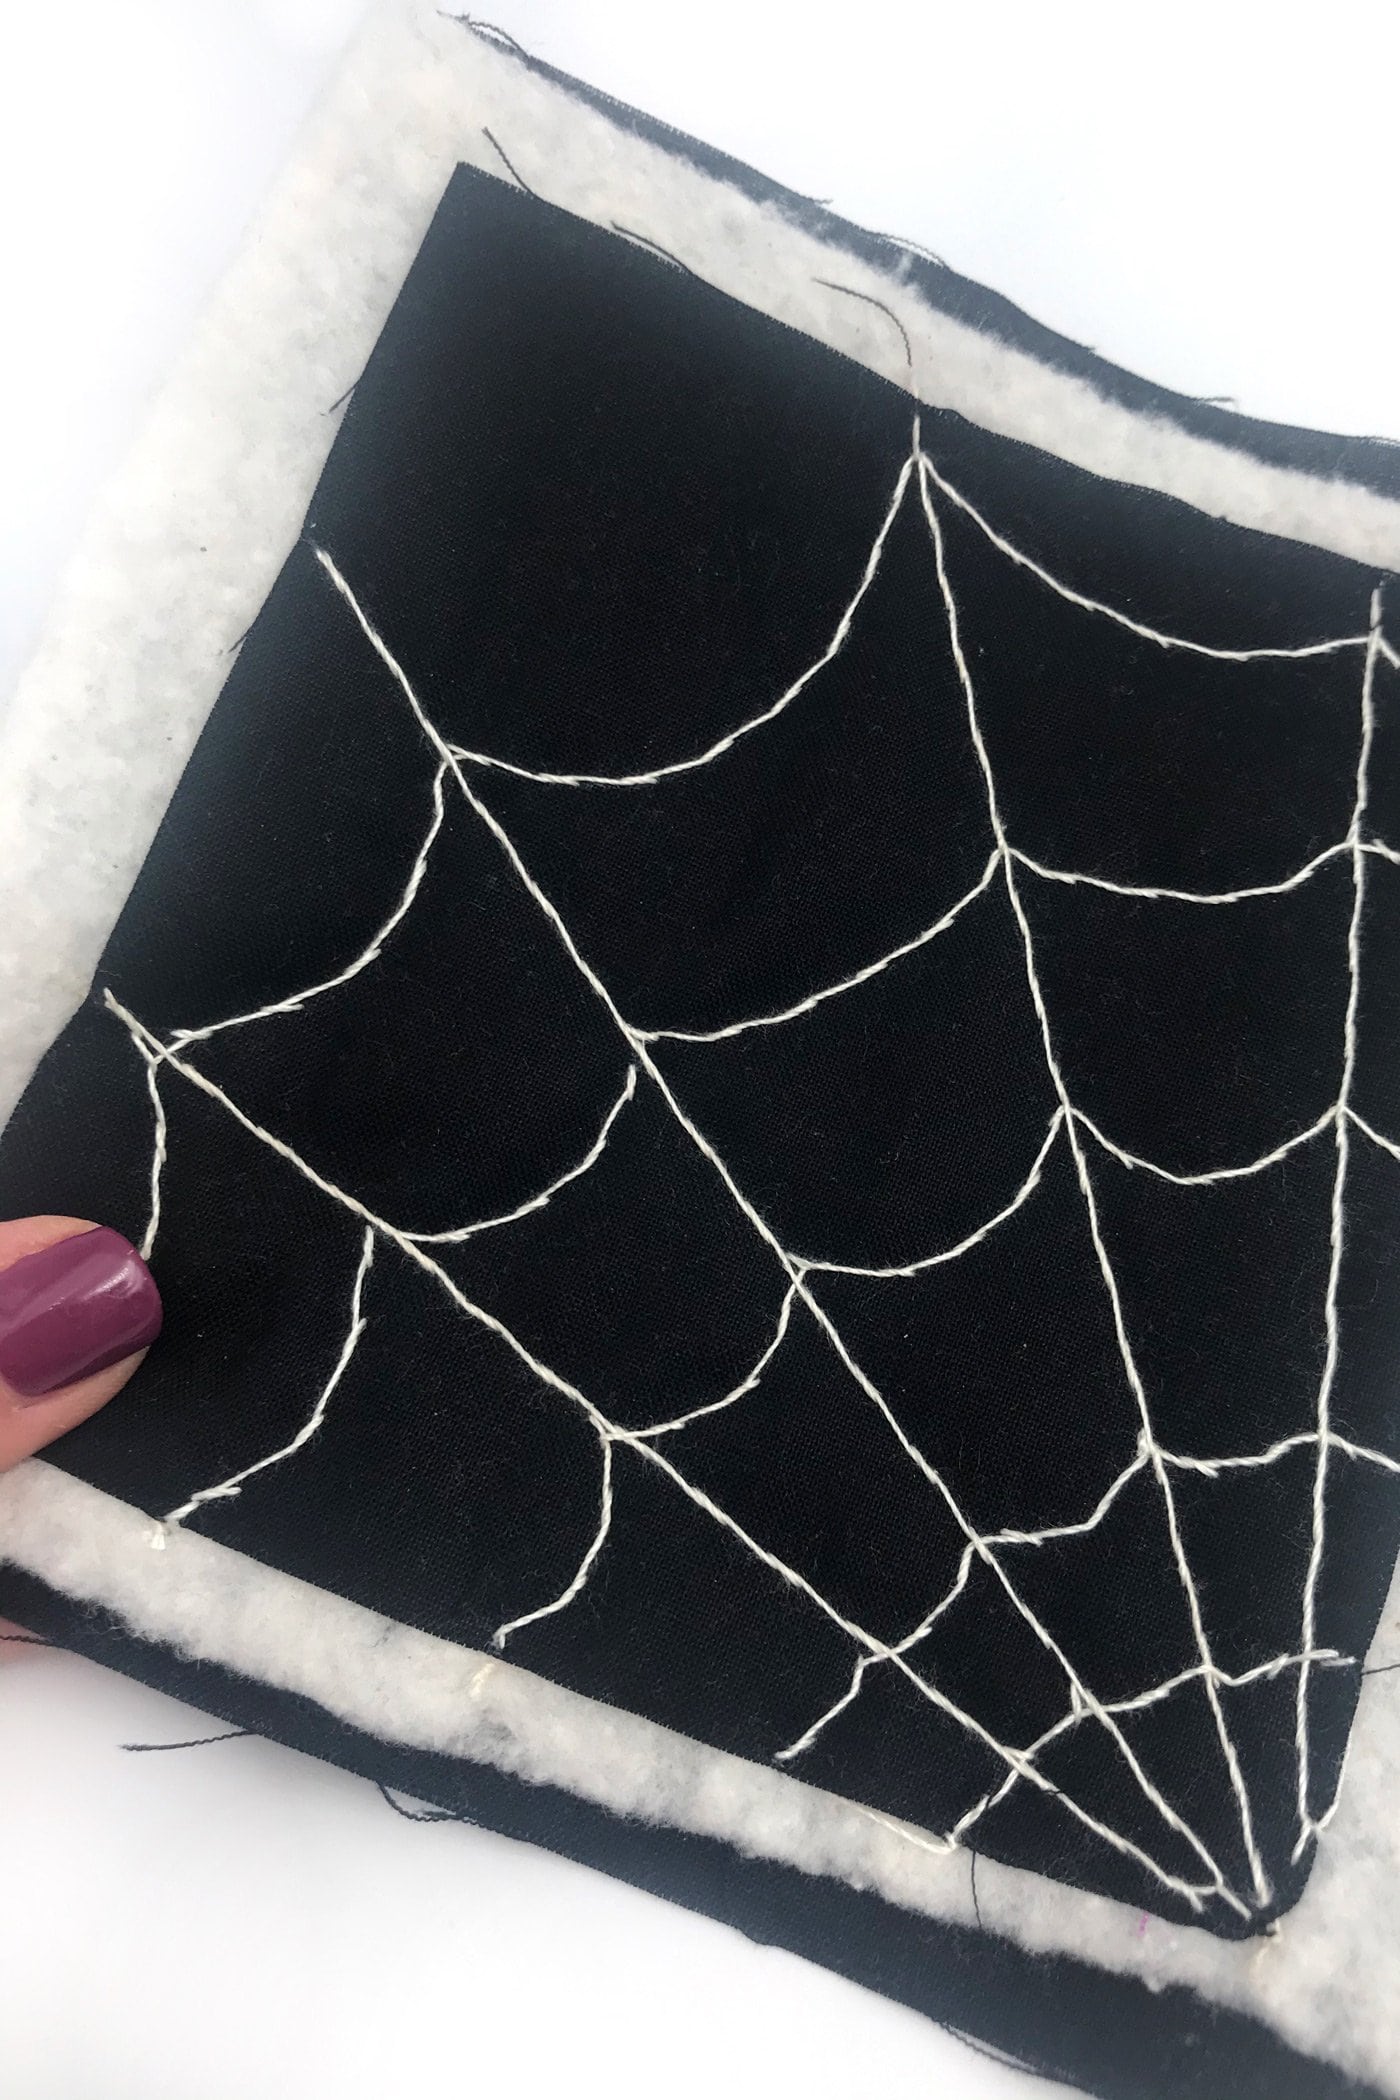 kain hitam dengan jaring laba-laba putih dijahit dengan benang putih di atas meja putih